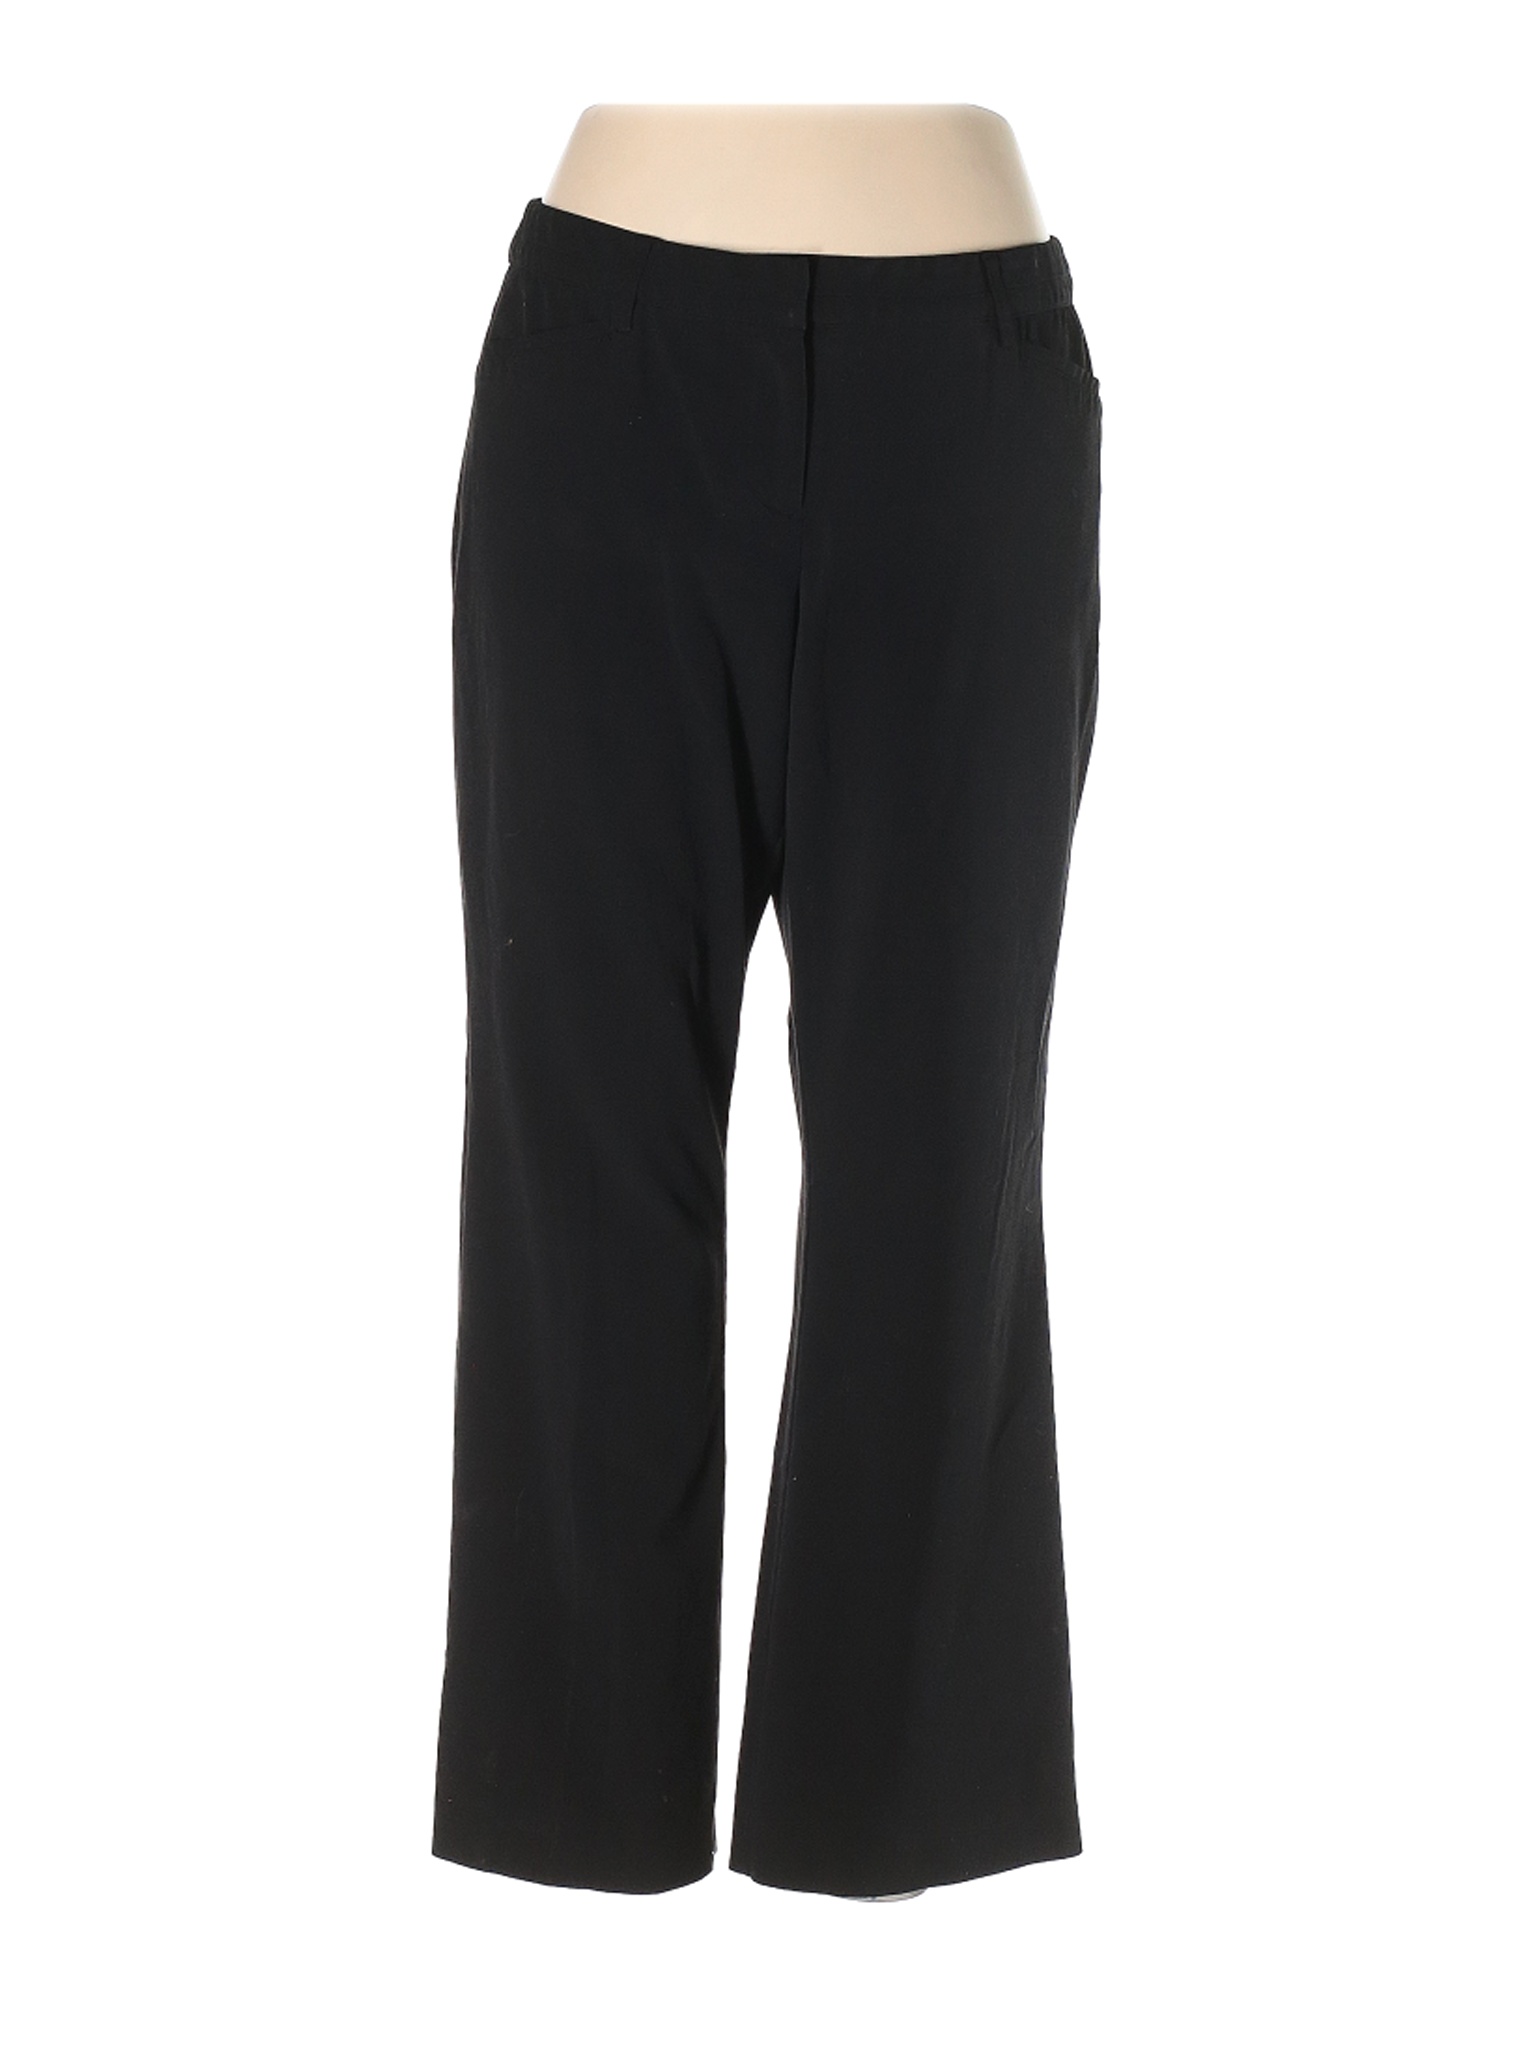 Lane Bryant Women Black Dress Pants 14 Plus | eBay